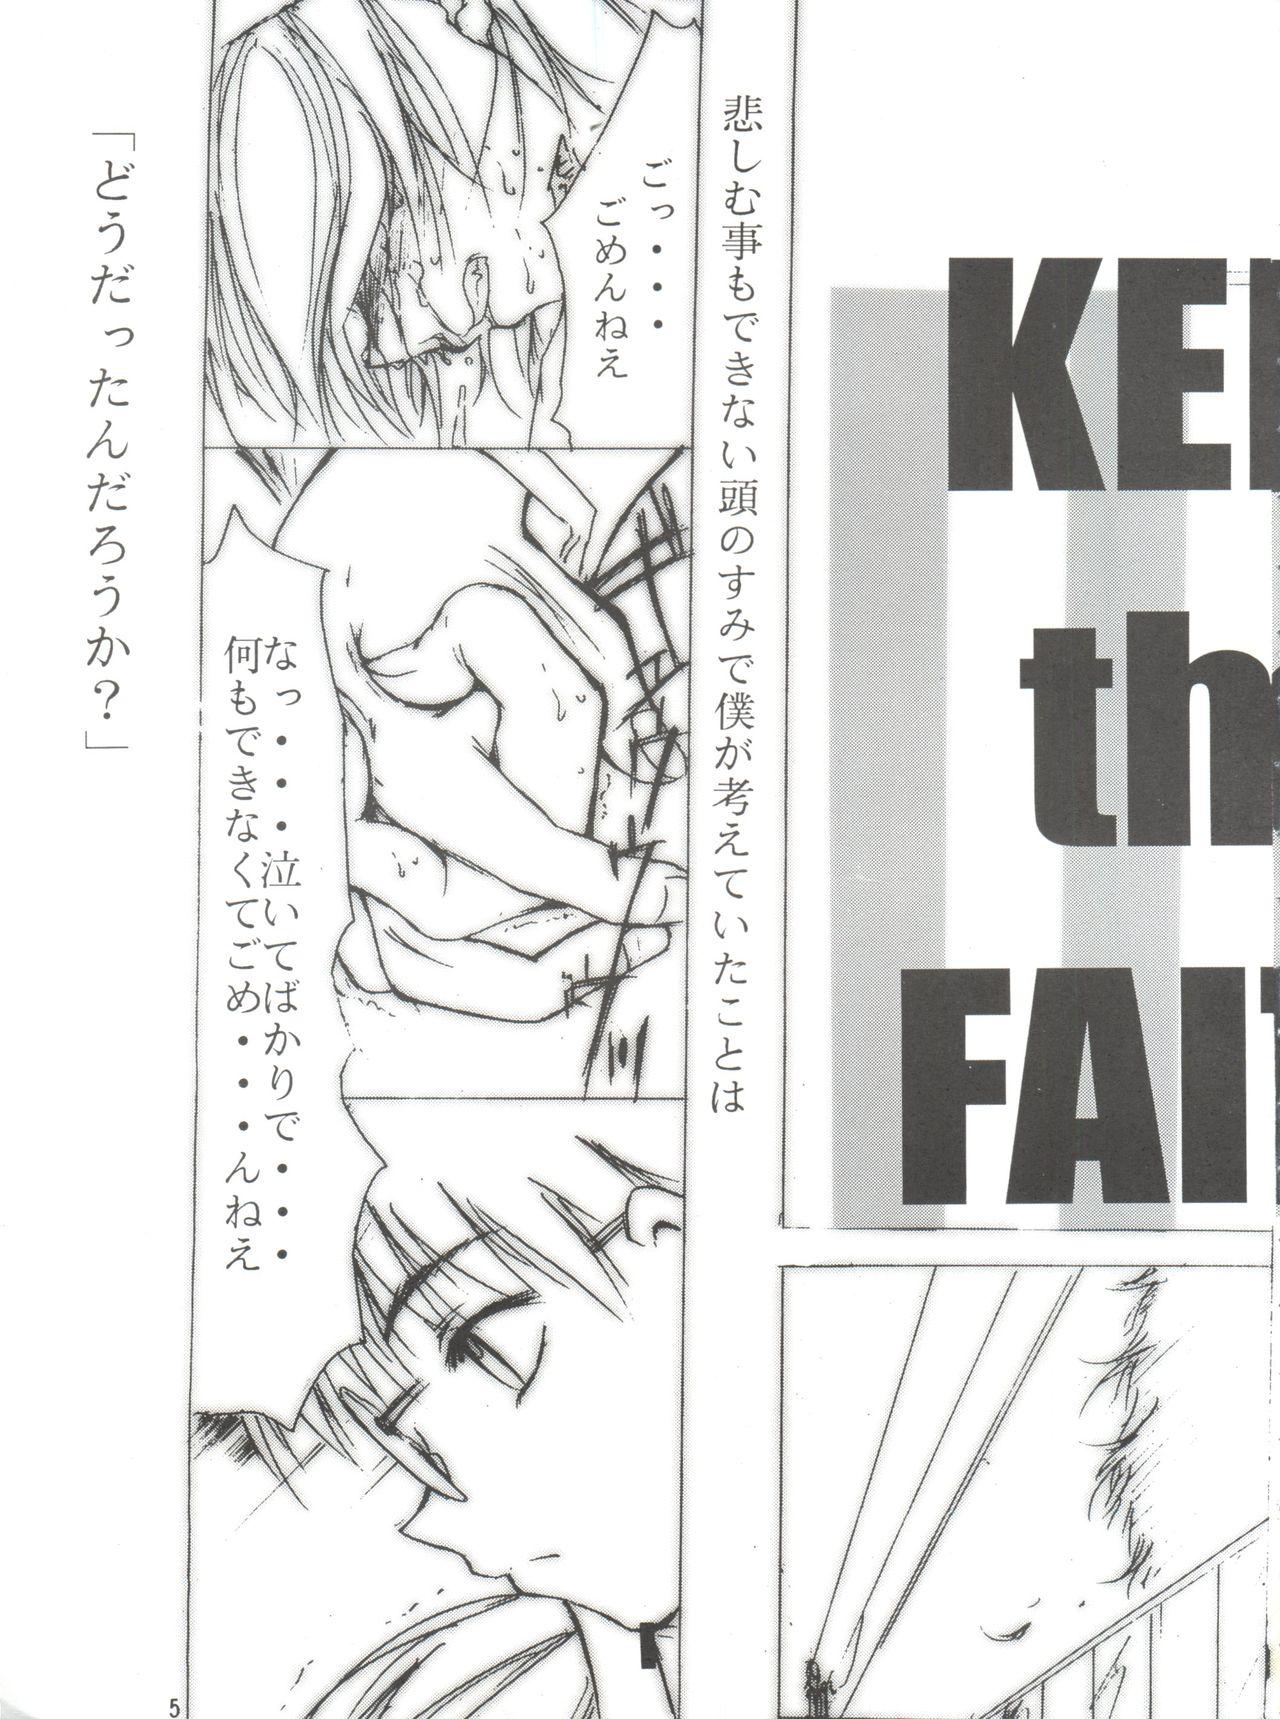 Keep the Faith 3